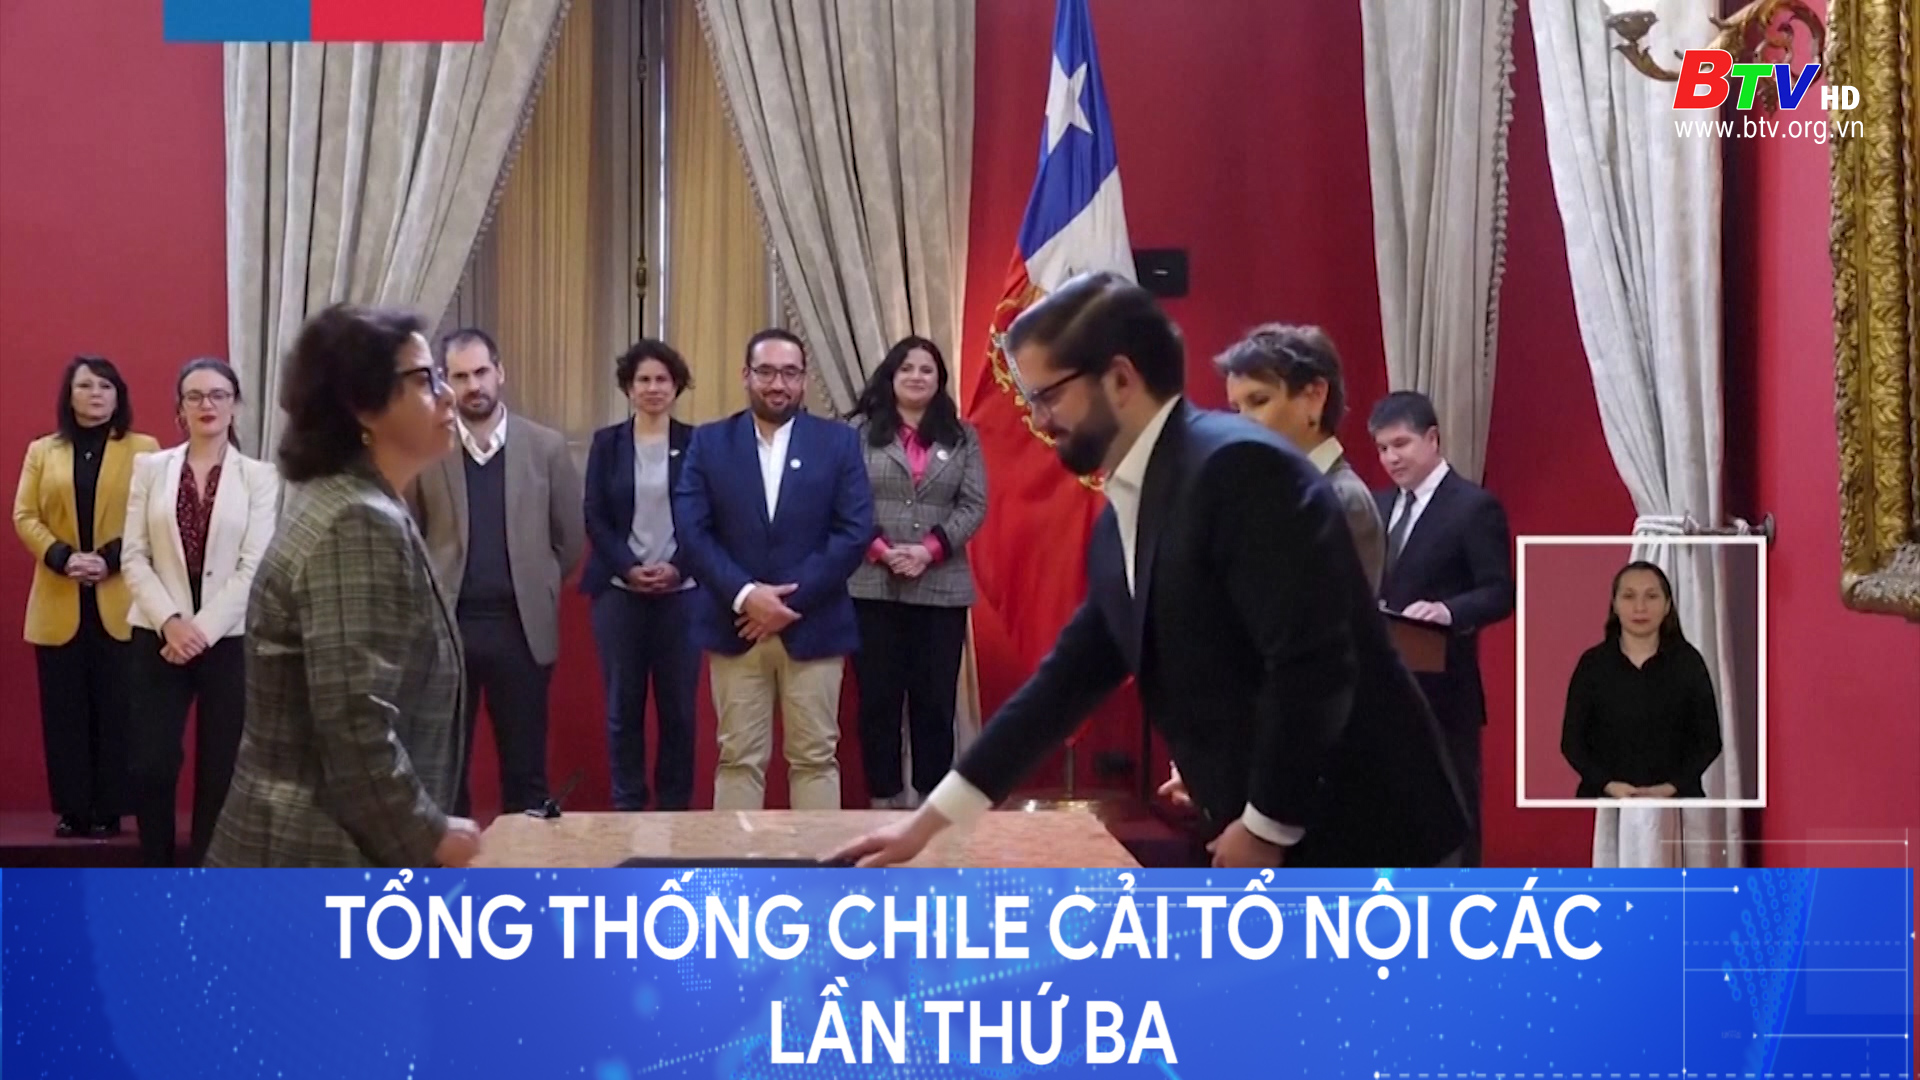 Tổng thống Chile cải tổ nội các lần thứ ba